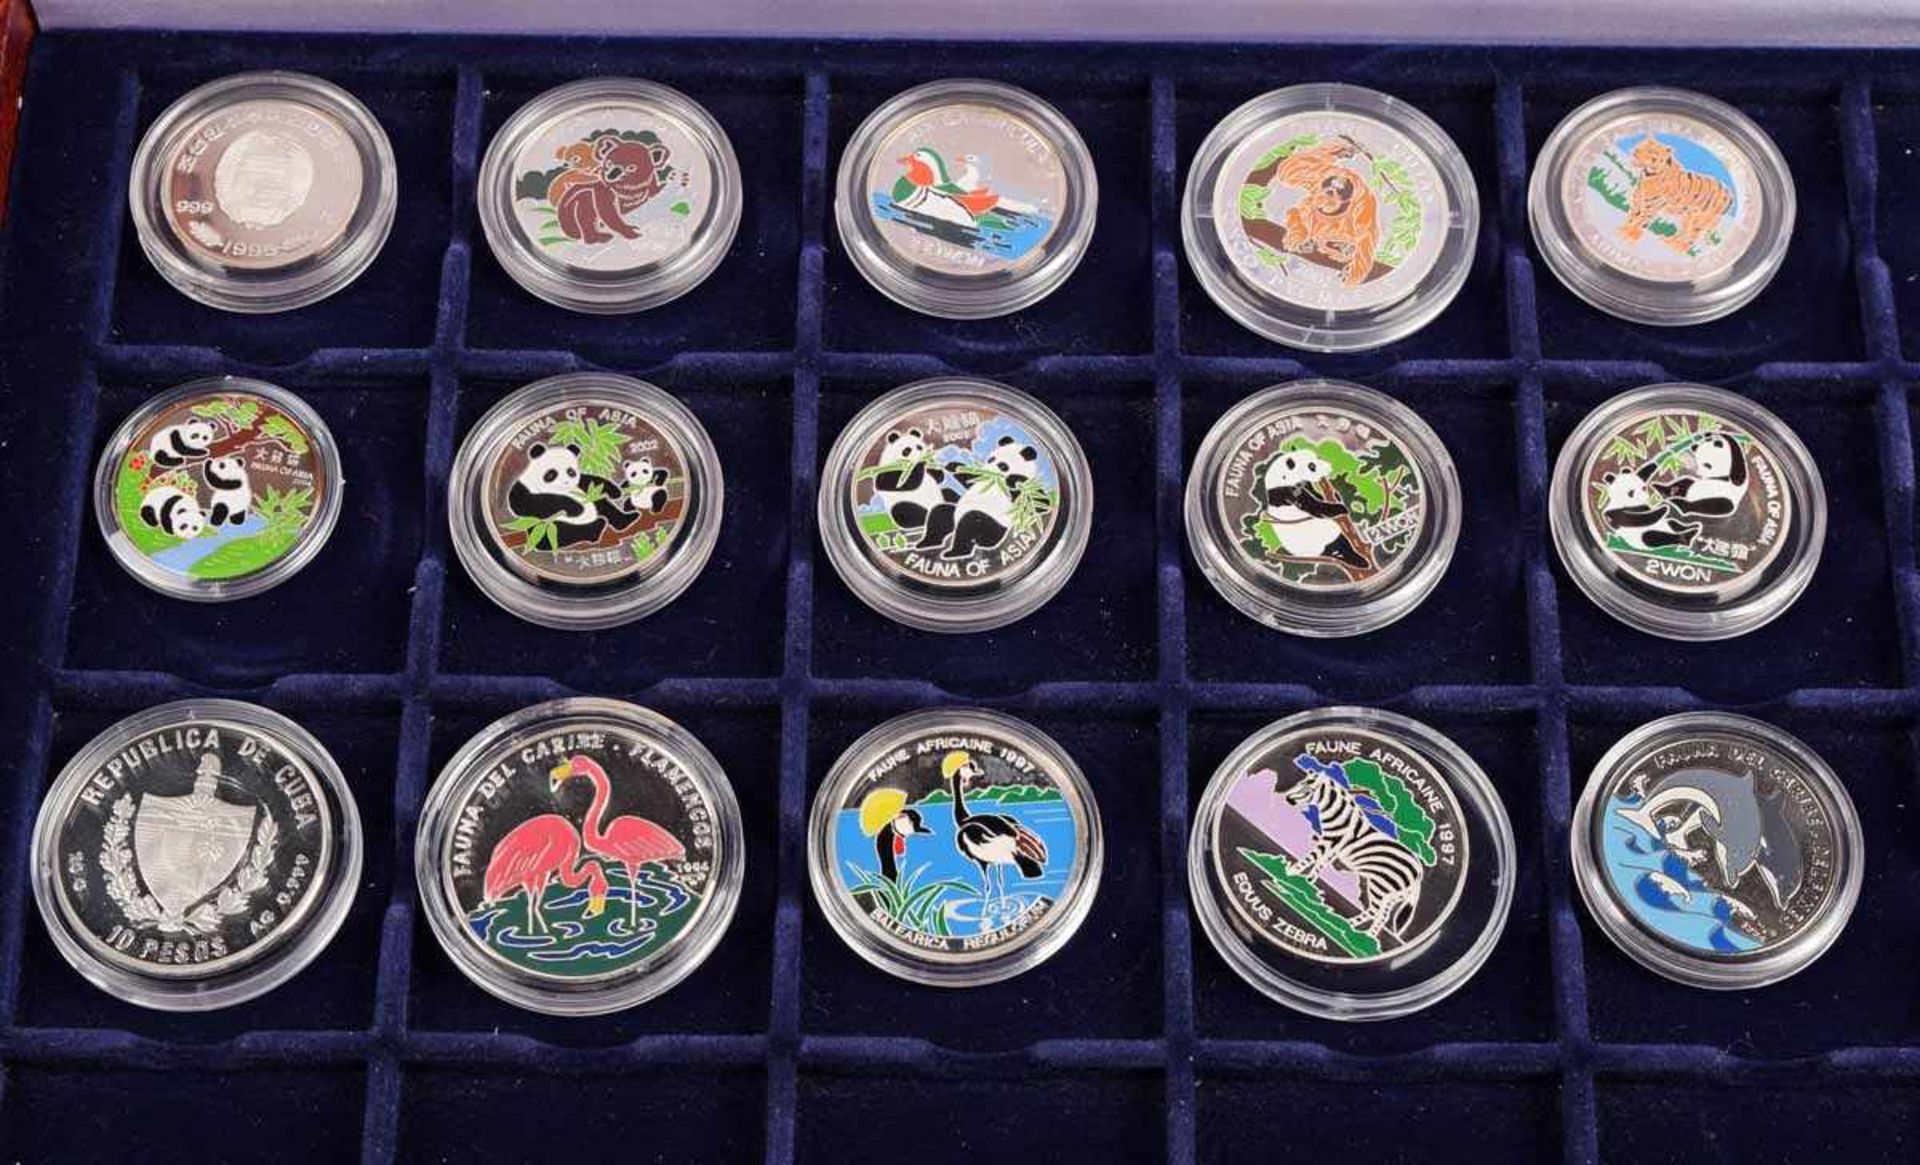 Sammlung Münzen "Tierwelt" insg. 15 Farbmünzen, davon 14 x Feinsilber, dabei: 5 x 2 Won Korea 2000- - Bild 2 aus 2